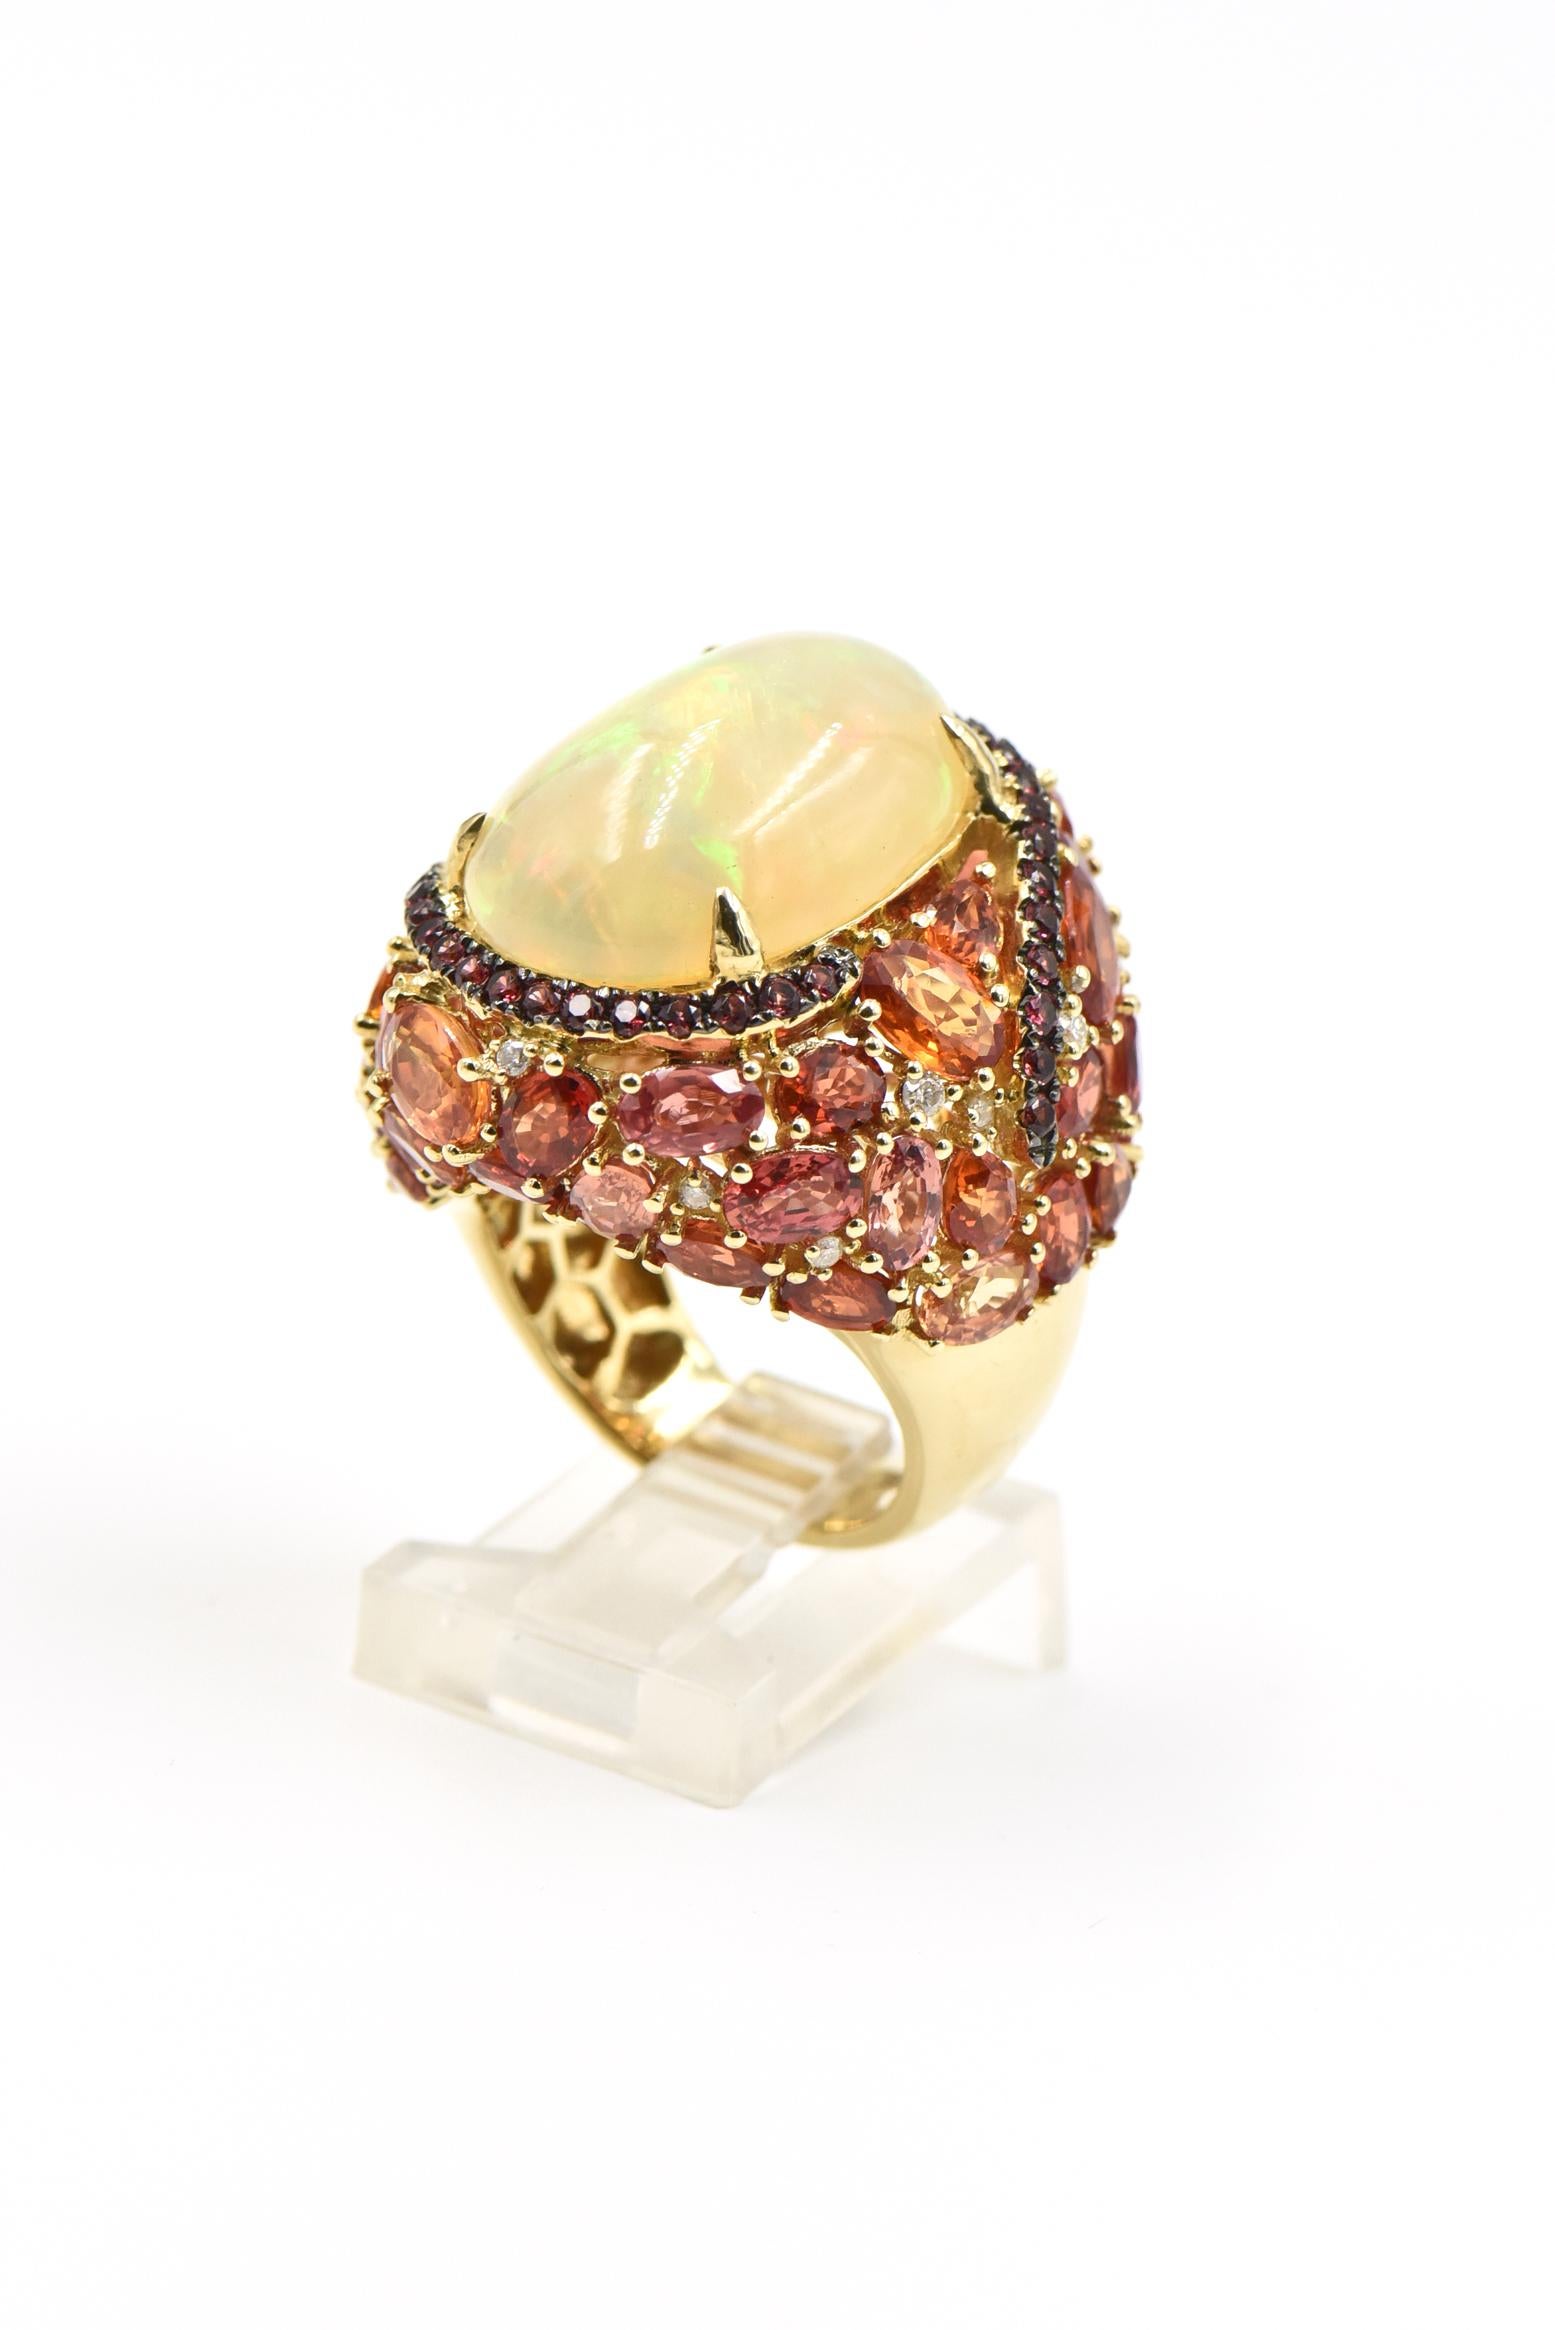 Wunderschön gearbeiteter Cocktailring aus 18 Karat Gelbgold mit einem in Zacken gefassten Opal von 9,18 Karat in einem rosa Saphirwirbel, der zu einer Kaskade von facettierten Vitrinen mit Diamanten von 0,16 Karat führt.  Dieser Ring ist wirklich